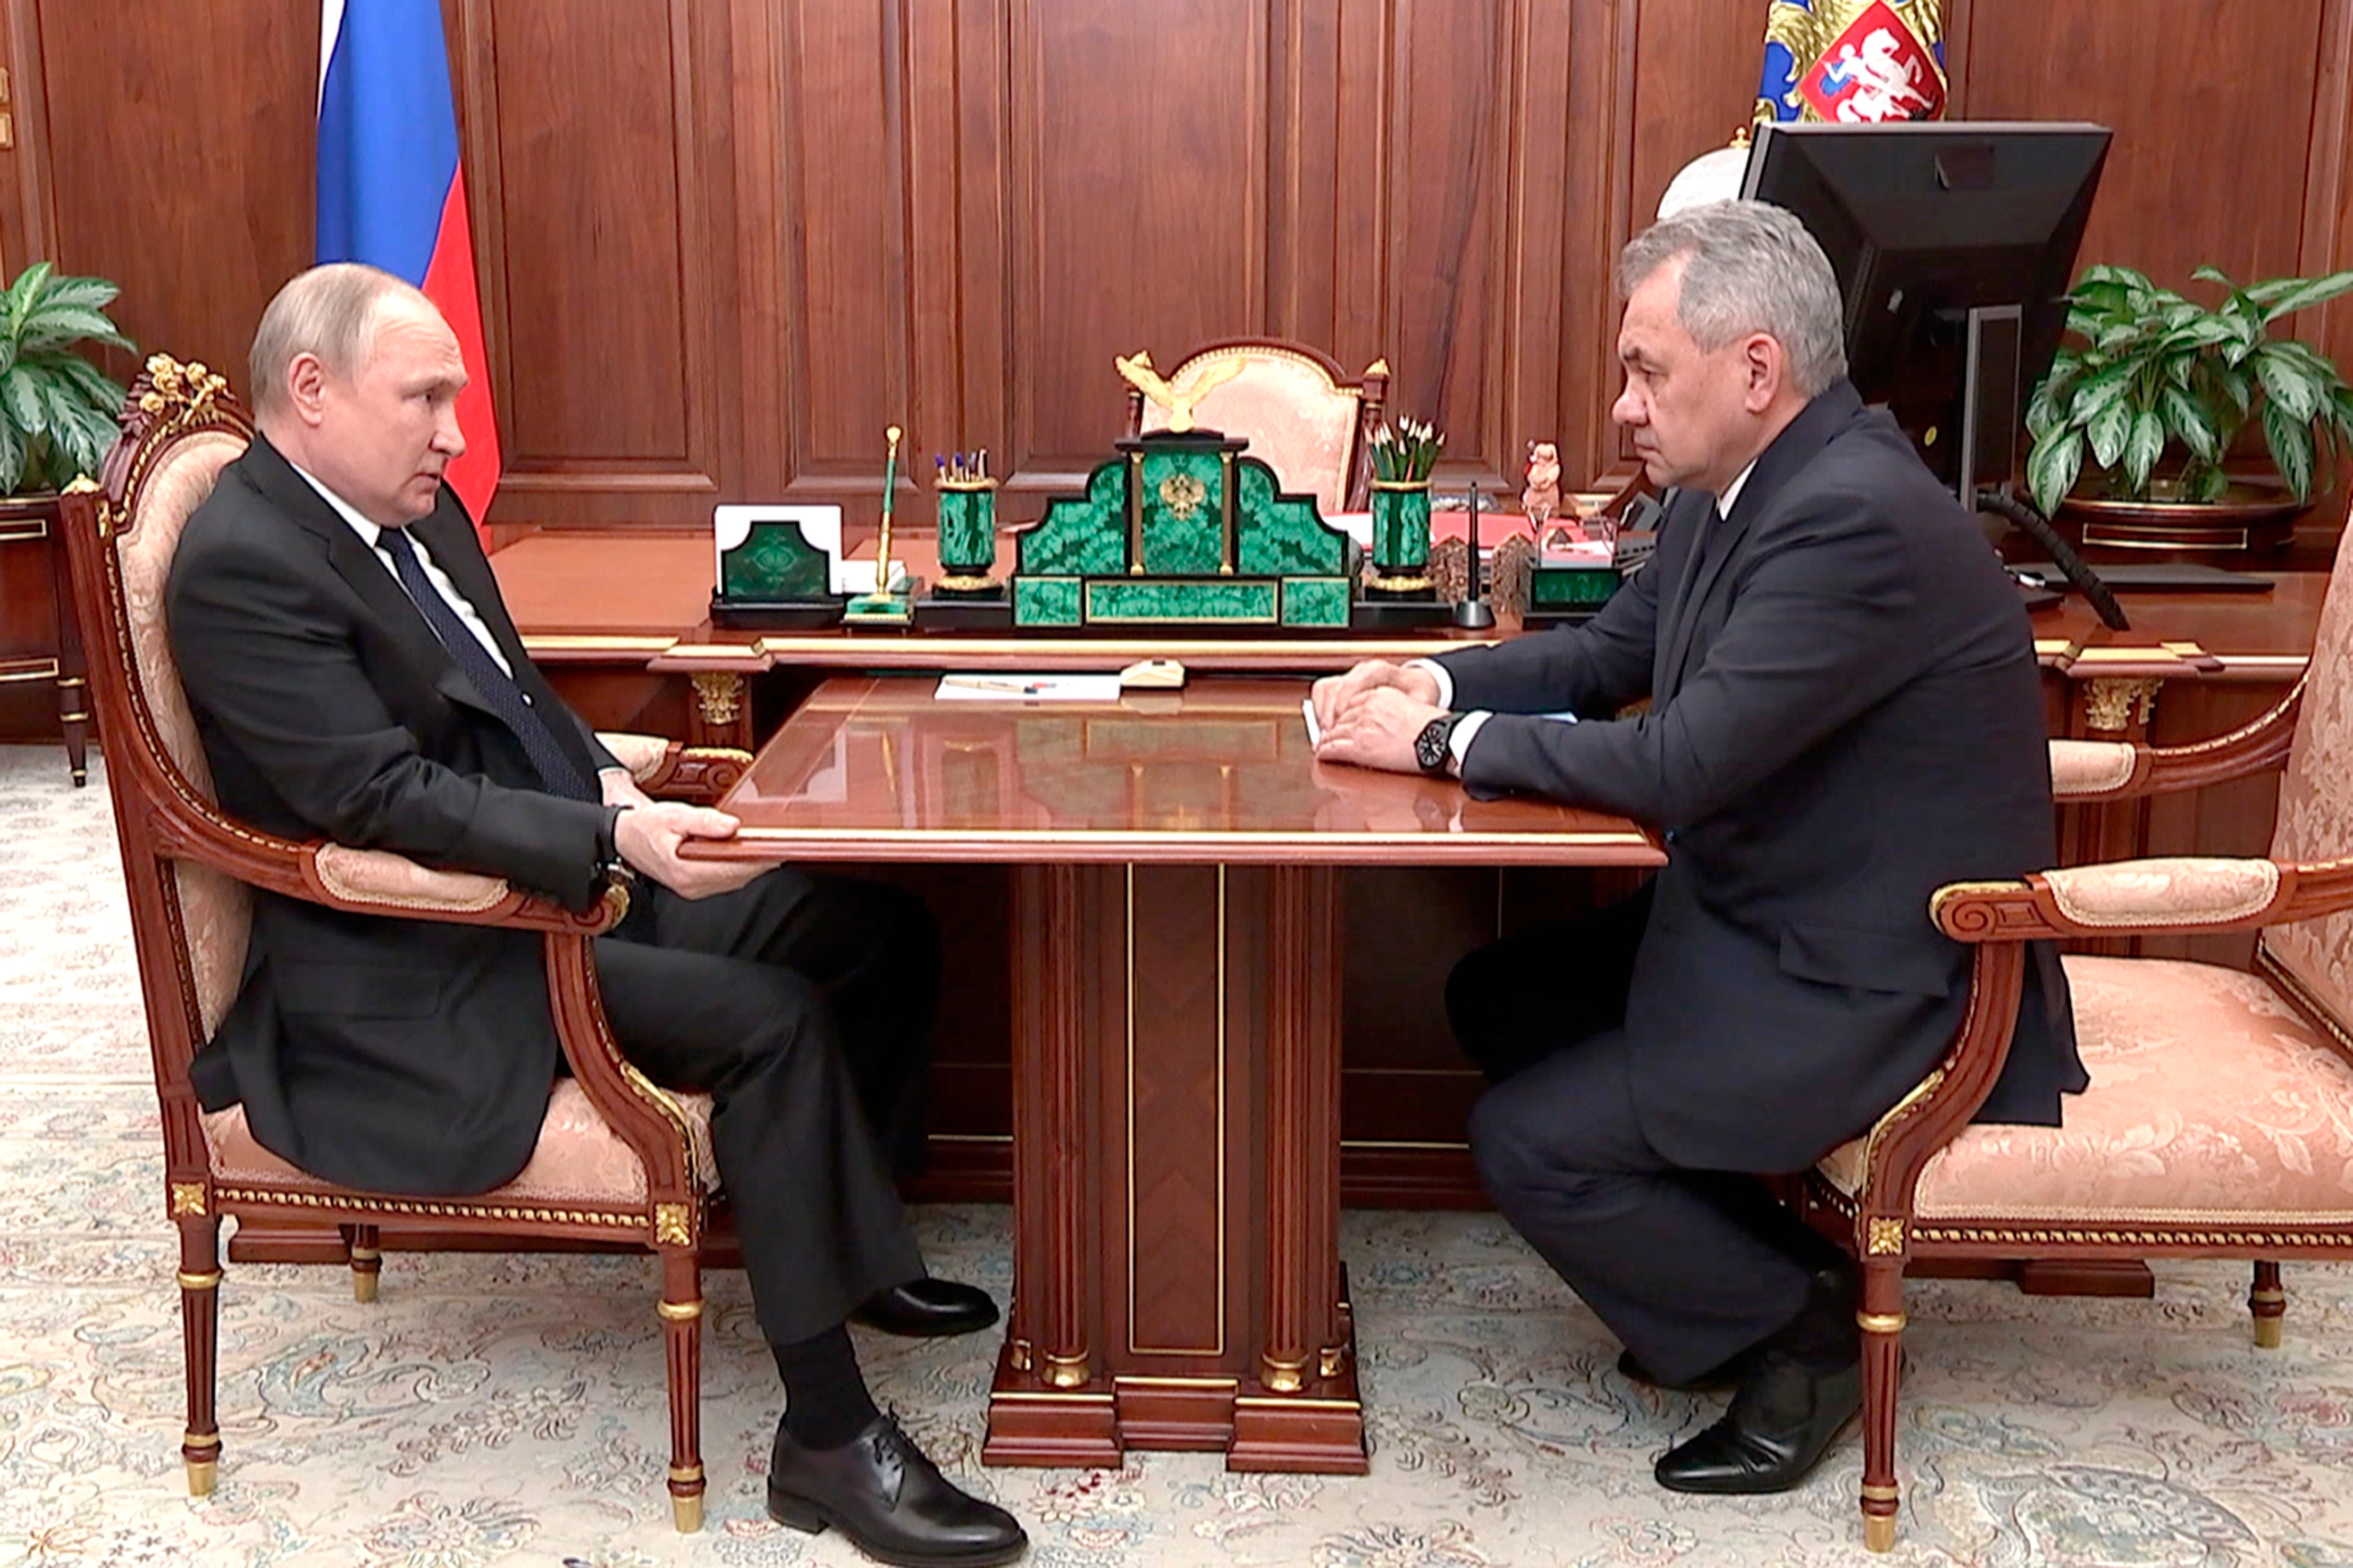 Las imágenes muestran a Putin sosteniendo una mesa durante gran parte de una reunión